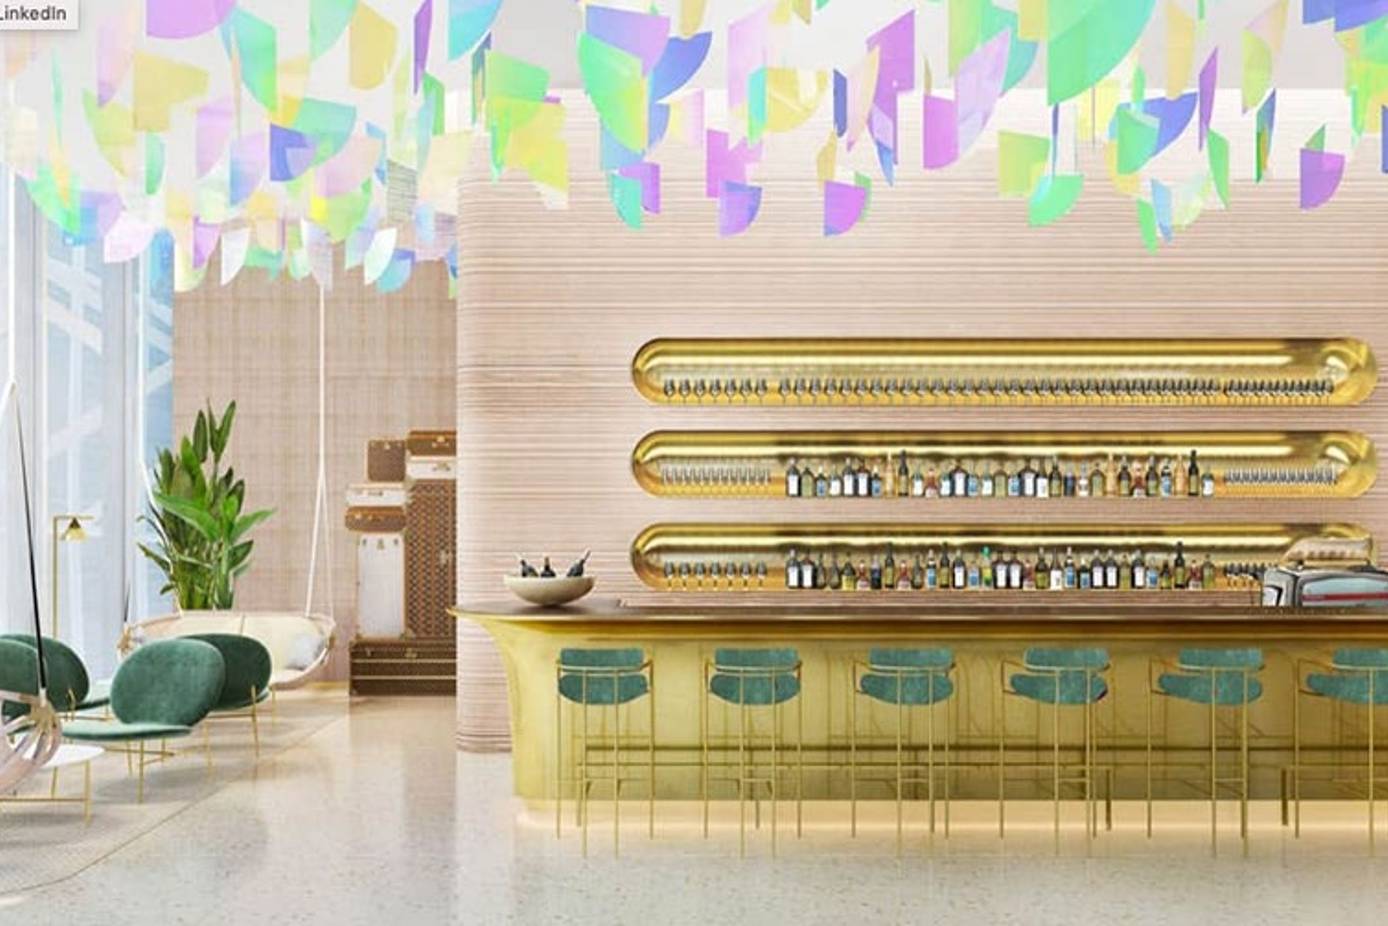 Louis Vuitton The Hall: Warum Luxusmarken auf das eigene Restaurant setzen